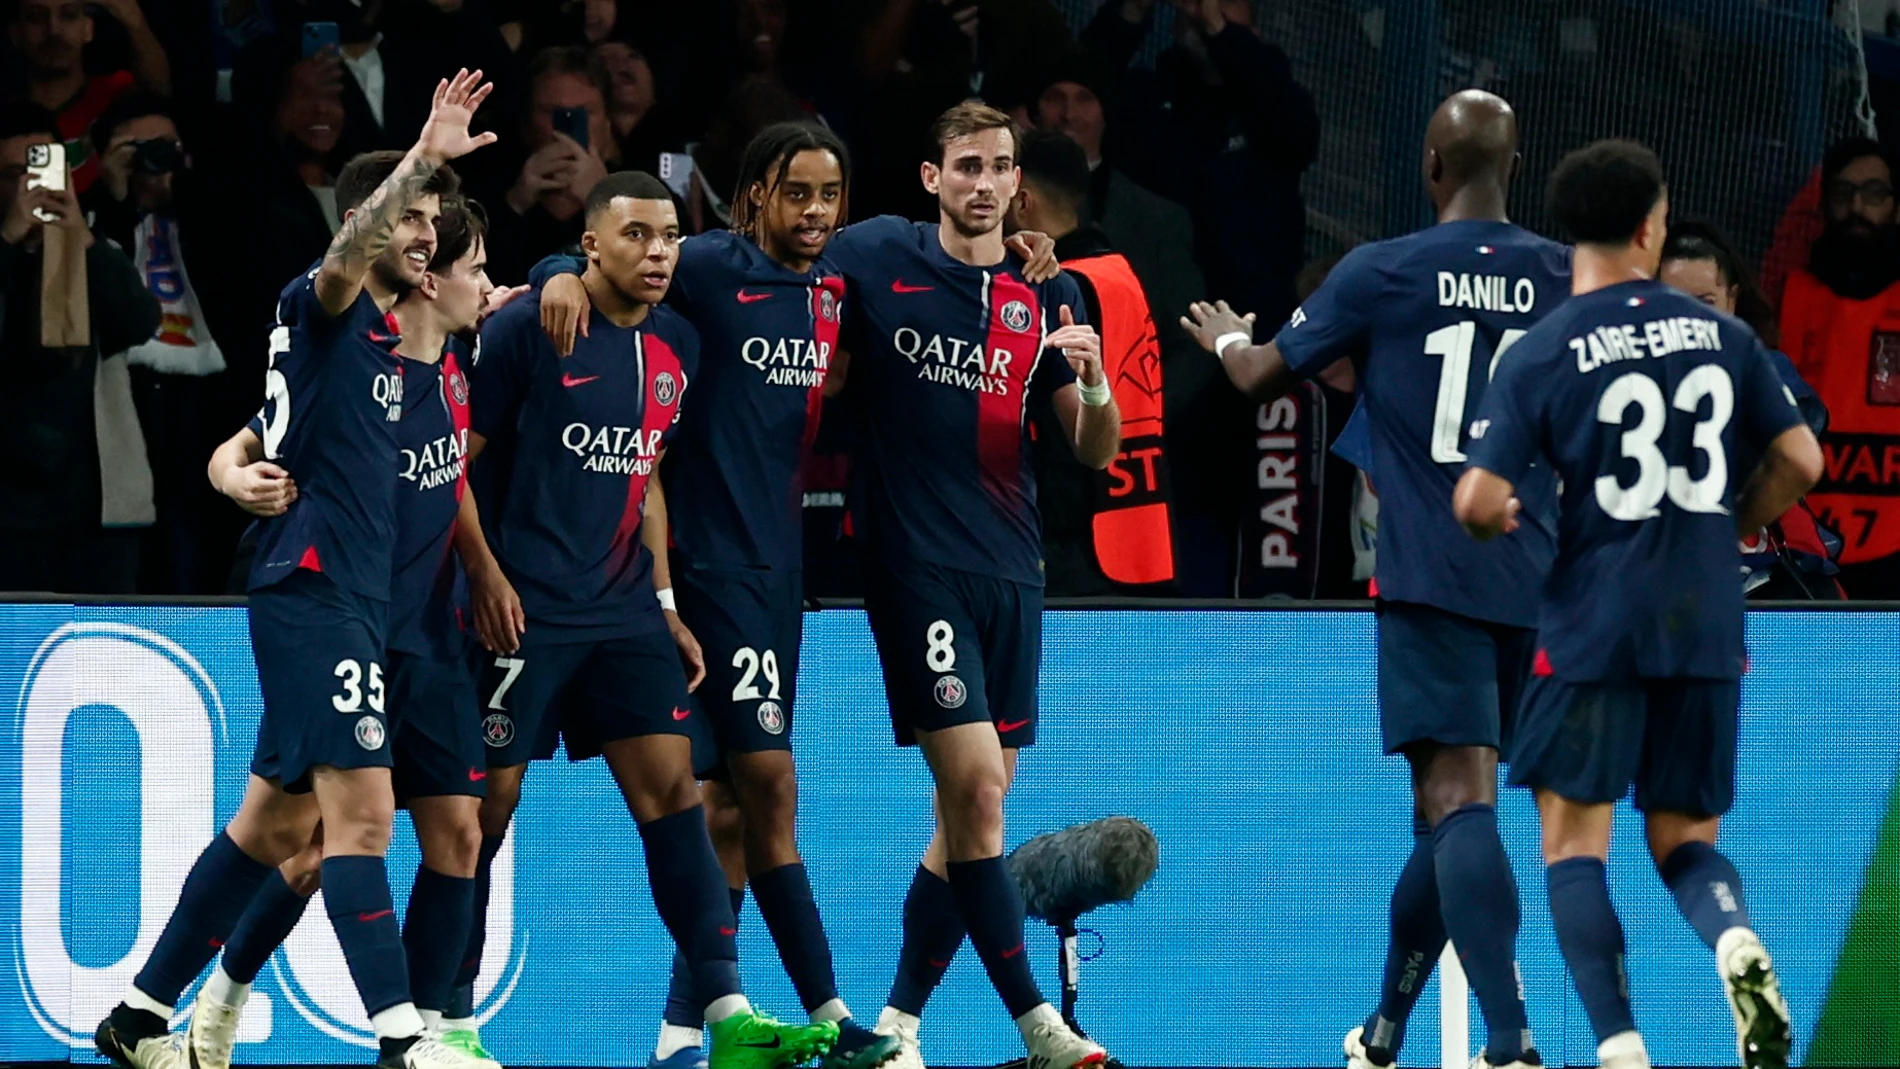 Los jugadores del PSG celebran un gol ante la Real Sociedad